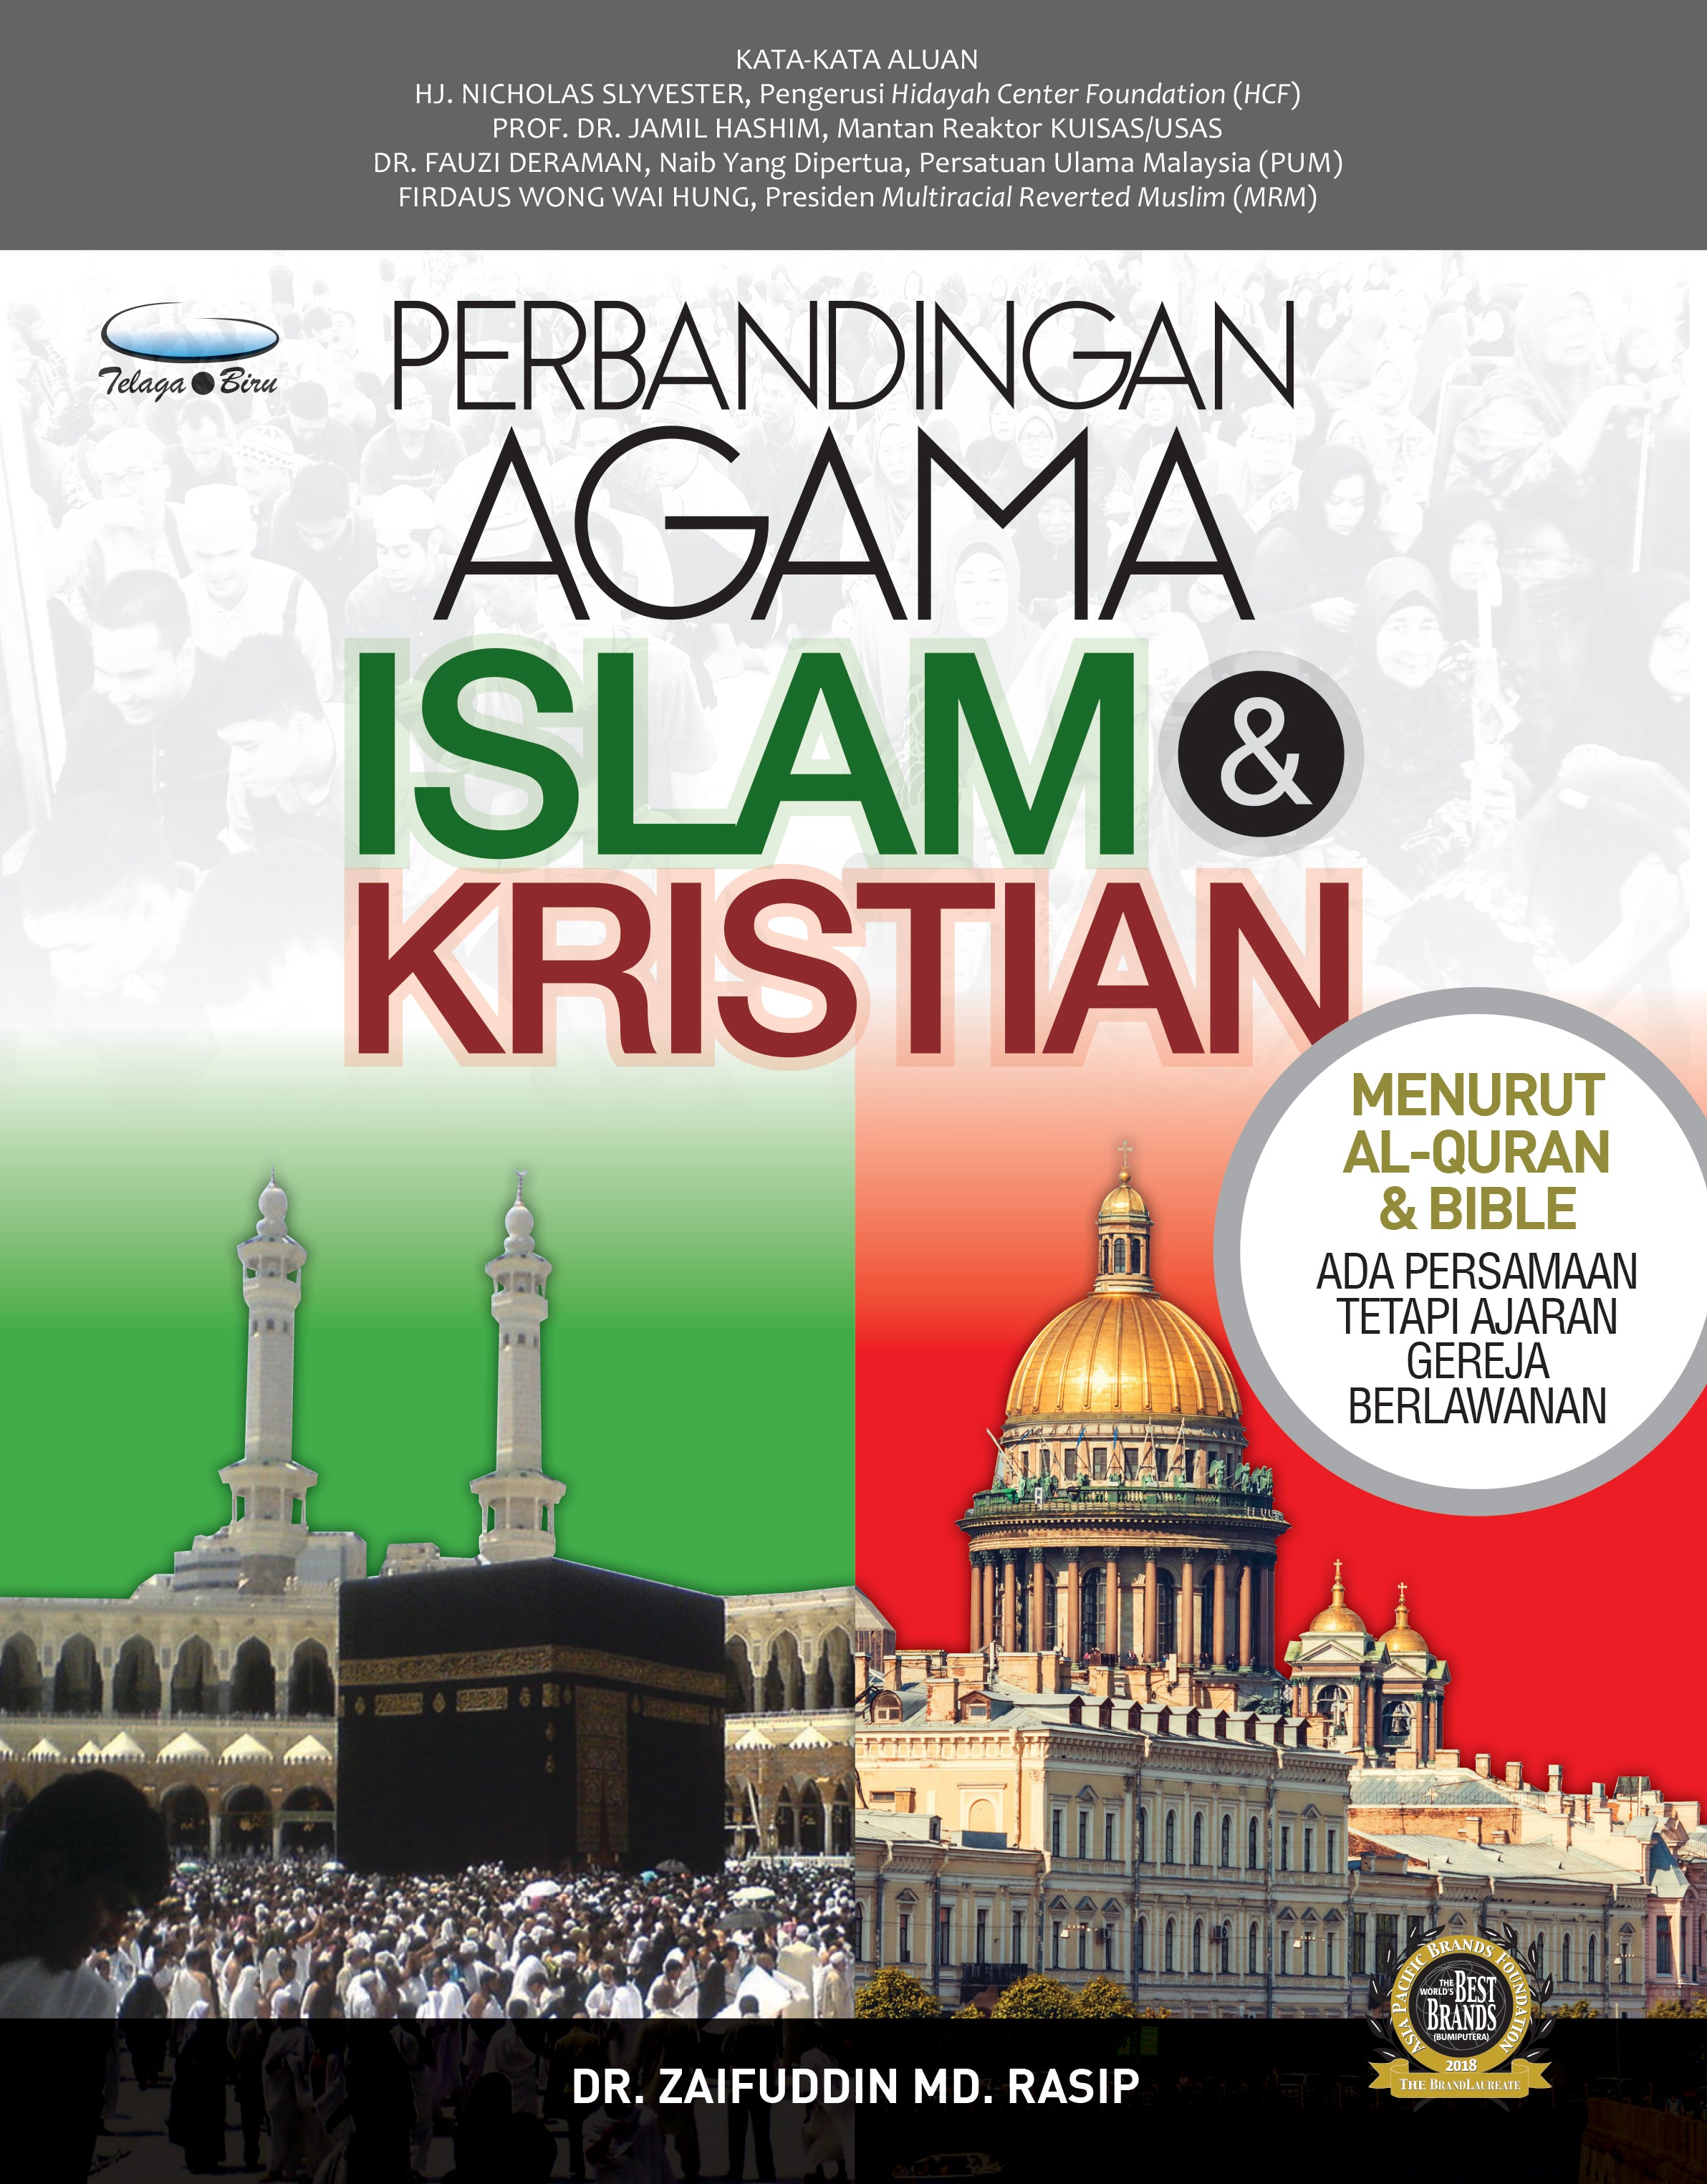 Perbandingan Agama Islam & Kristian - (TBBK1493)